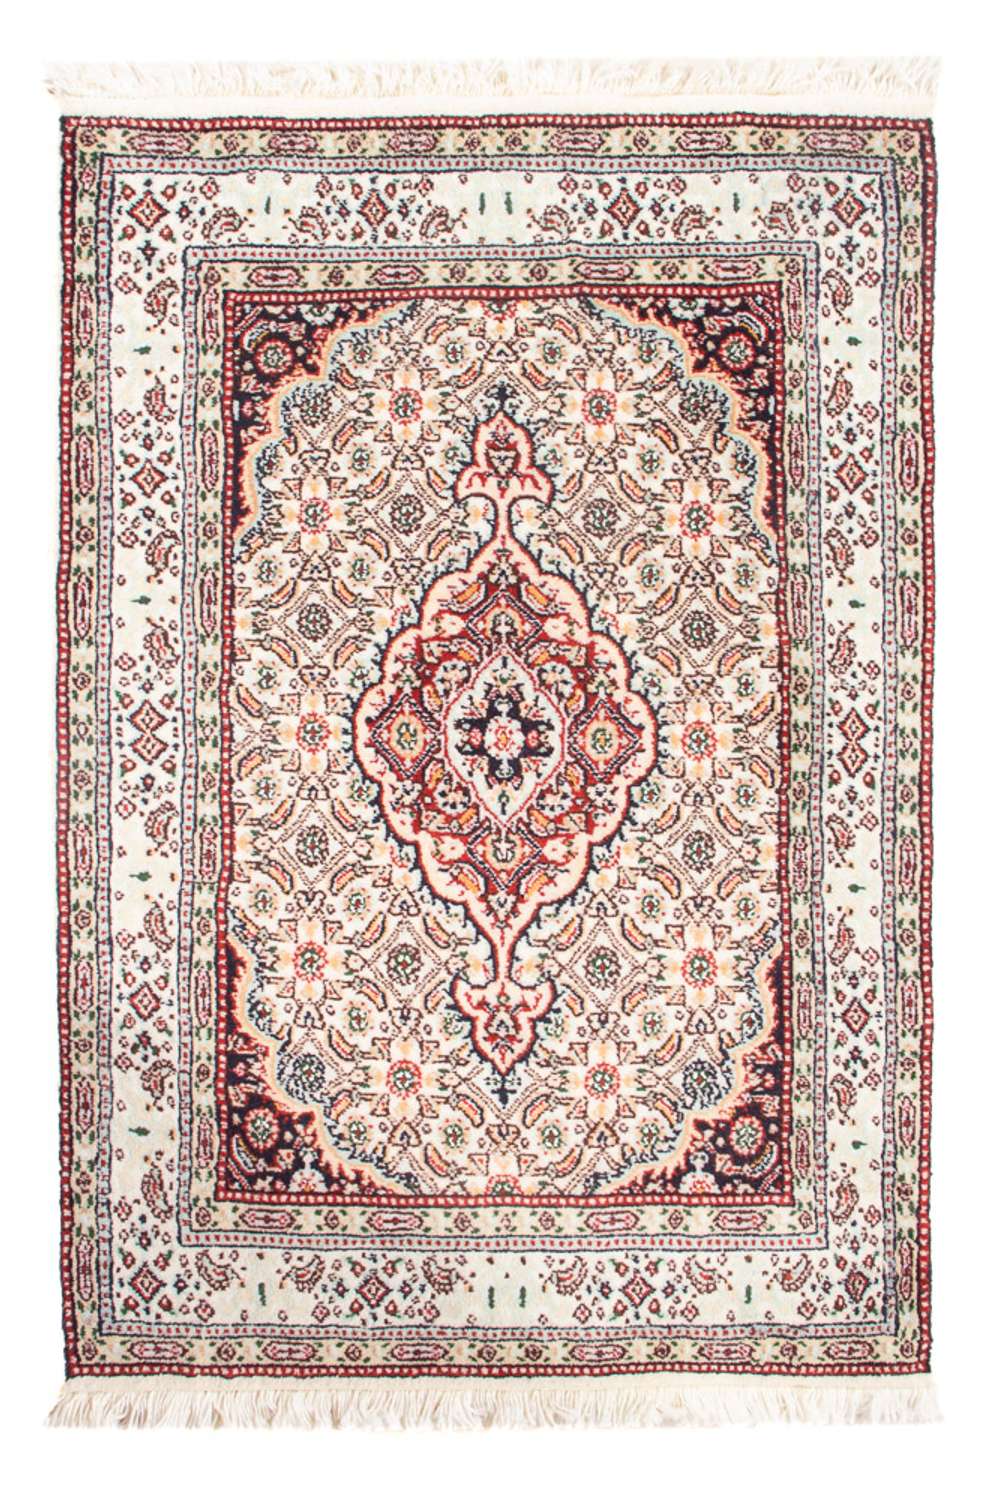 Dywan perski - Klasyczny - Royal - 90 x 60 cm - jasna czerwień